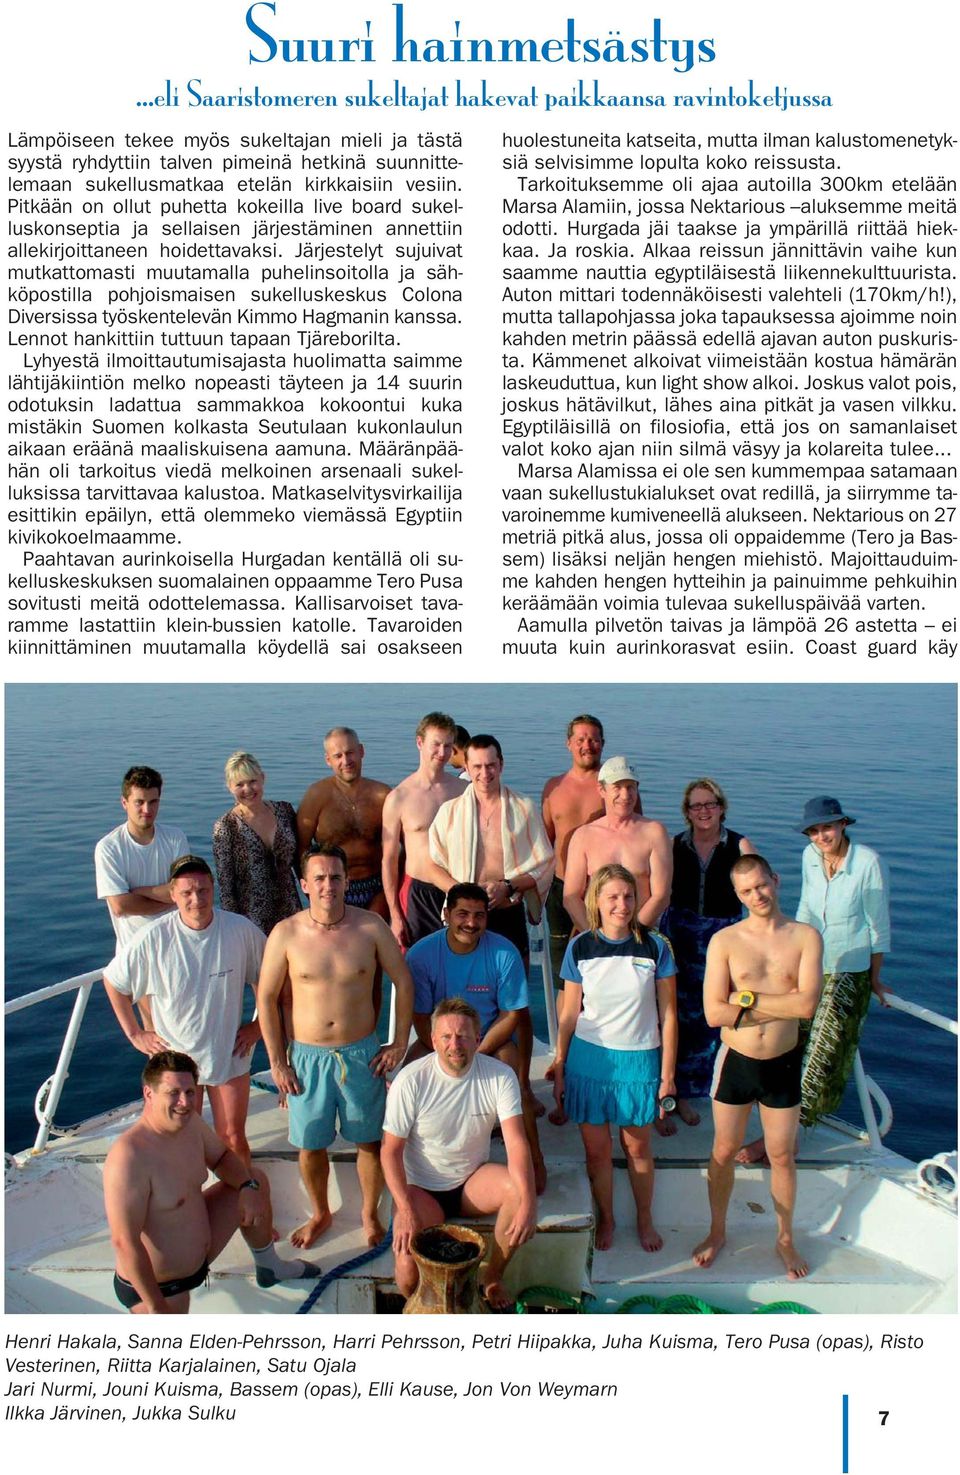 Järjestelyt sujuivat mutkattomasti muutamalla puhelinsoitolla ja sähköpostilla pohjoismaisen sukelluskeskus Colona Diversissa työskentelevän Kimmo Hagmanin kanssa.